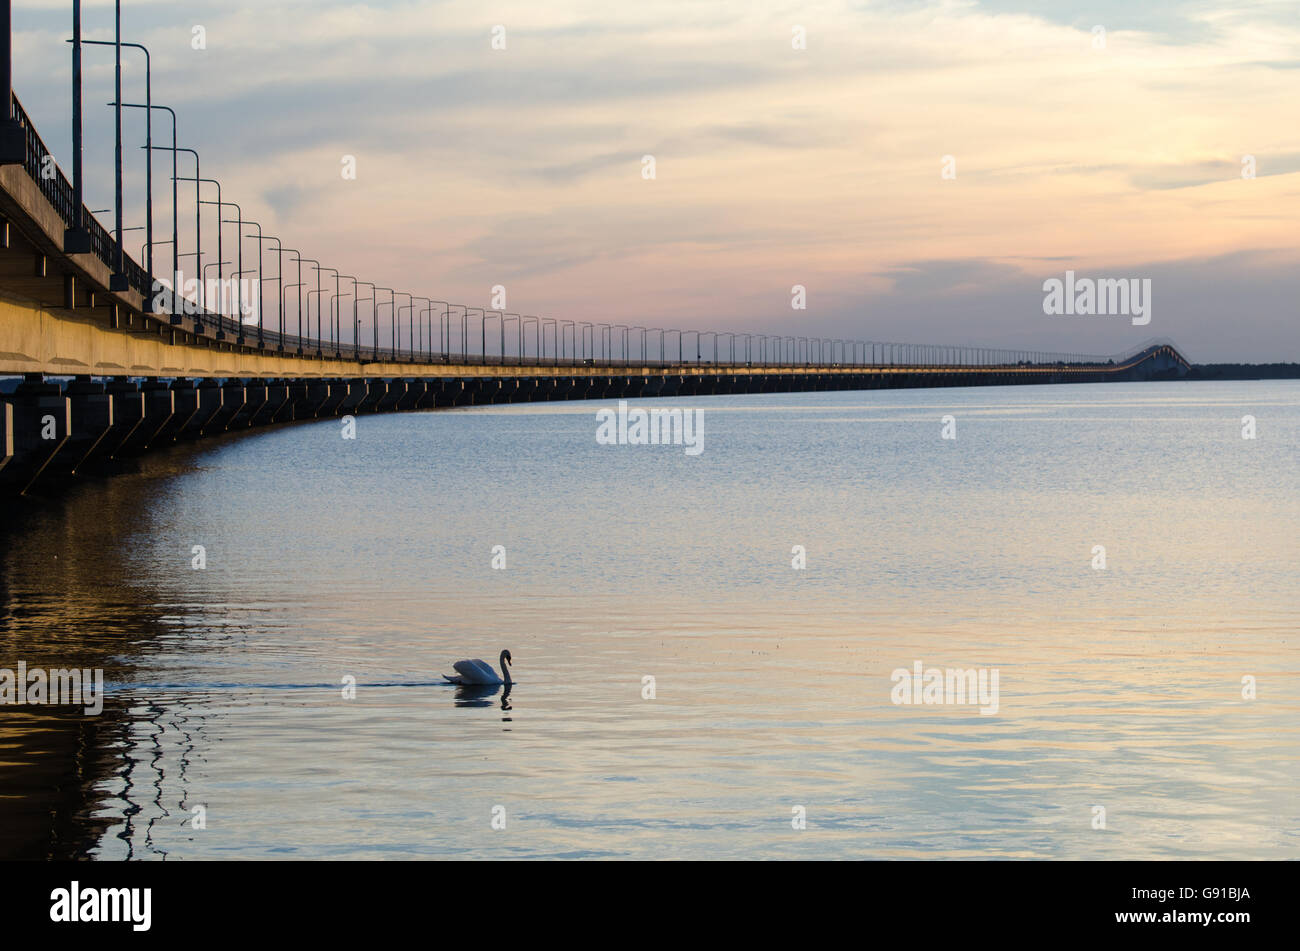 Abend zu beruhigen mit der Öland-Brücke in Schweden, Verbindung der schwedischen Insel Öland mit dem Festland Schweden Stockfoto